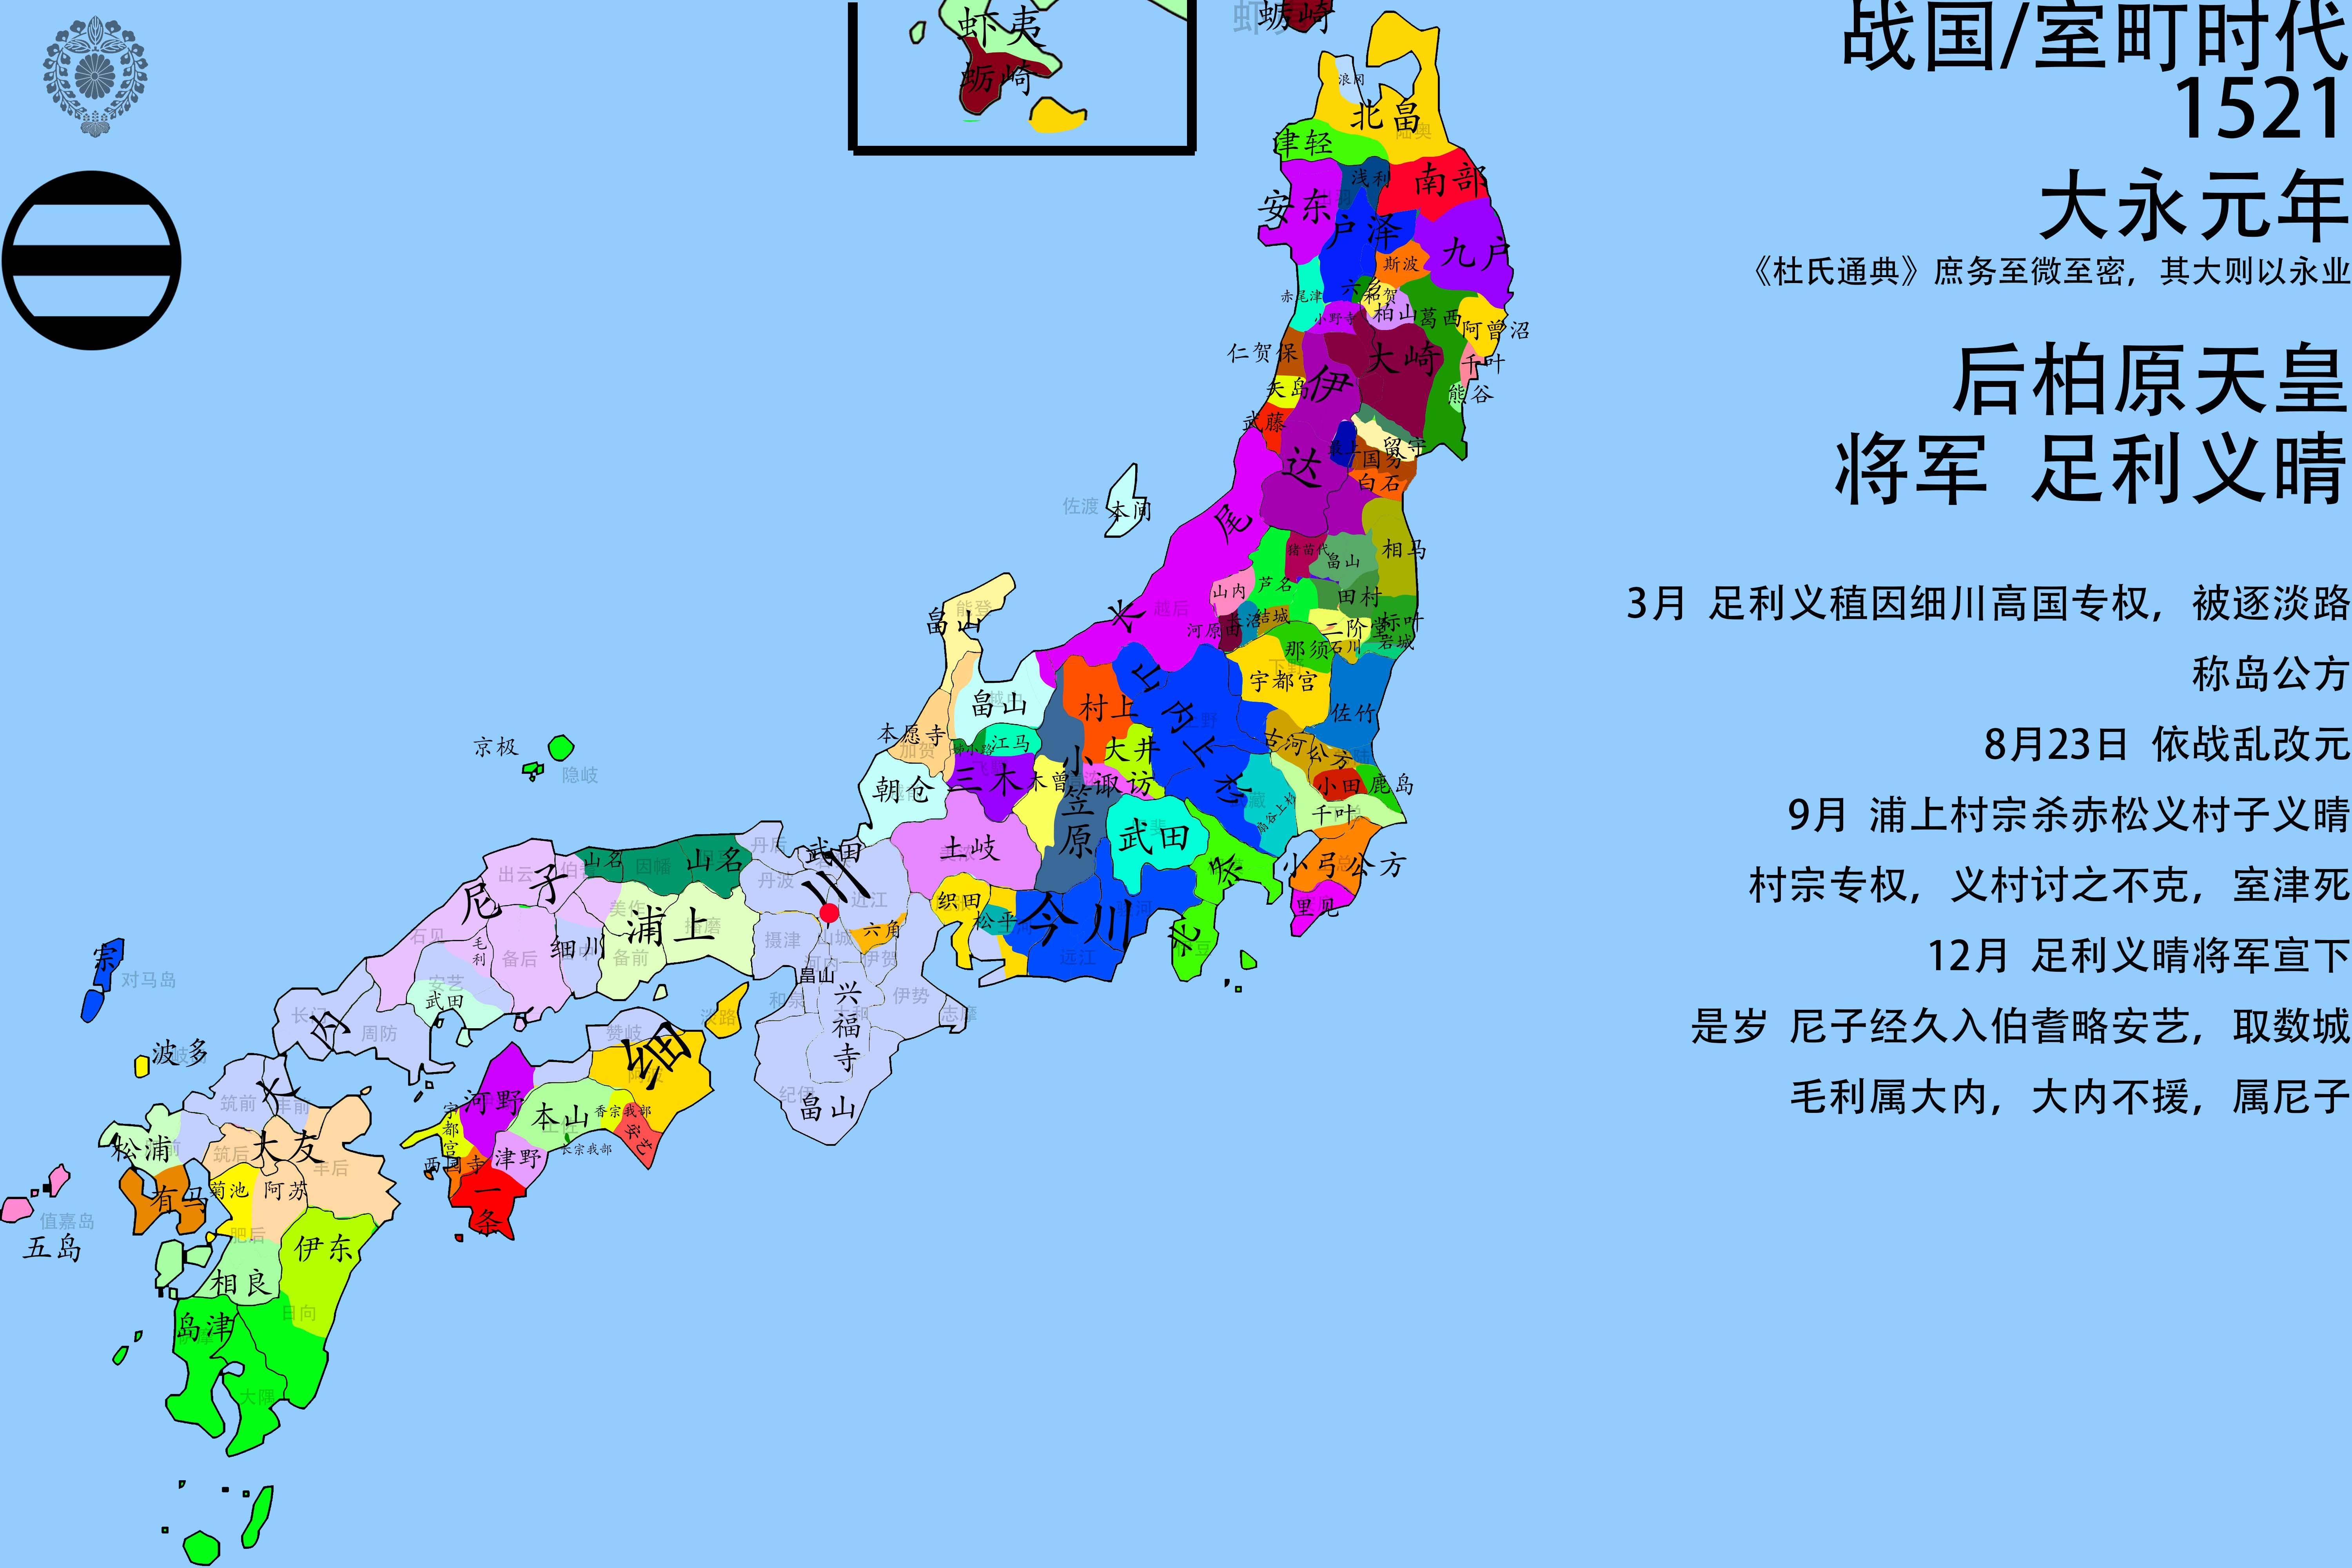 日本战国时代势力地图图片